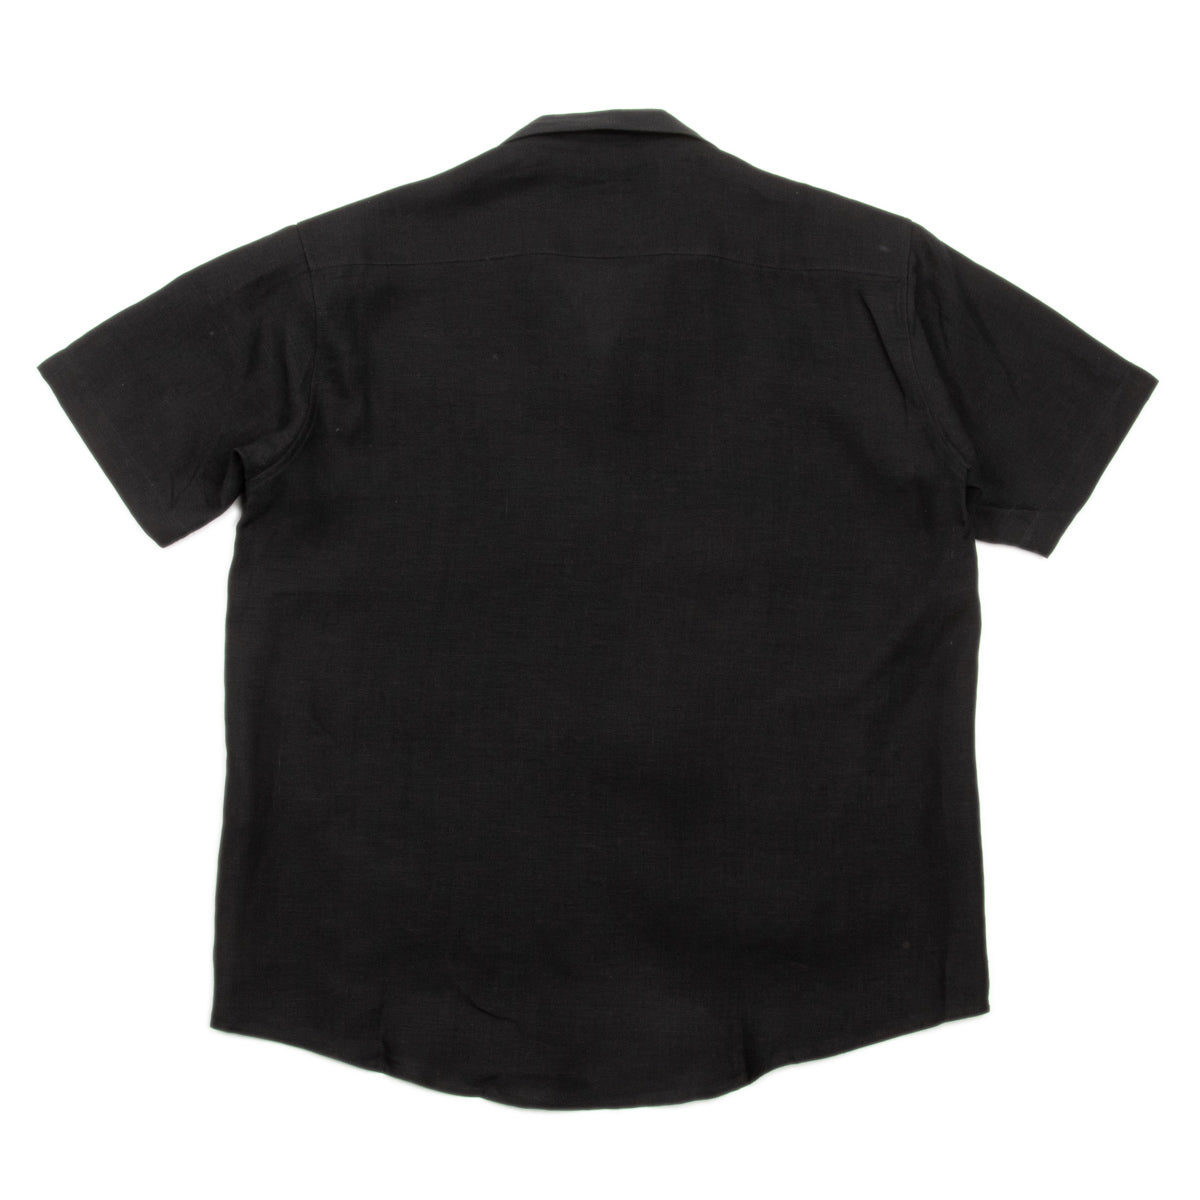 Stewart Enslow Summer Shirt- Black Floral